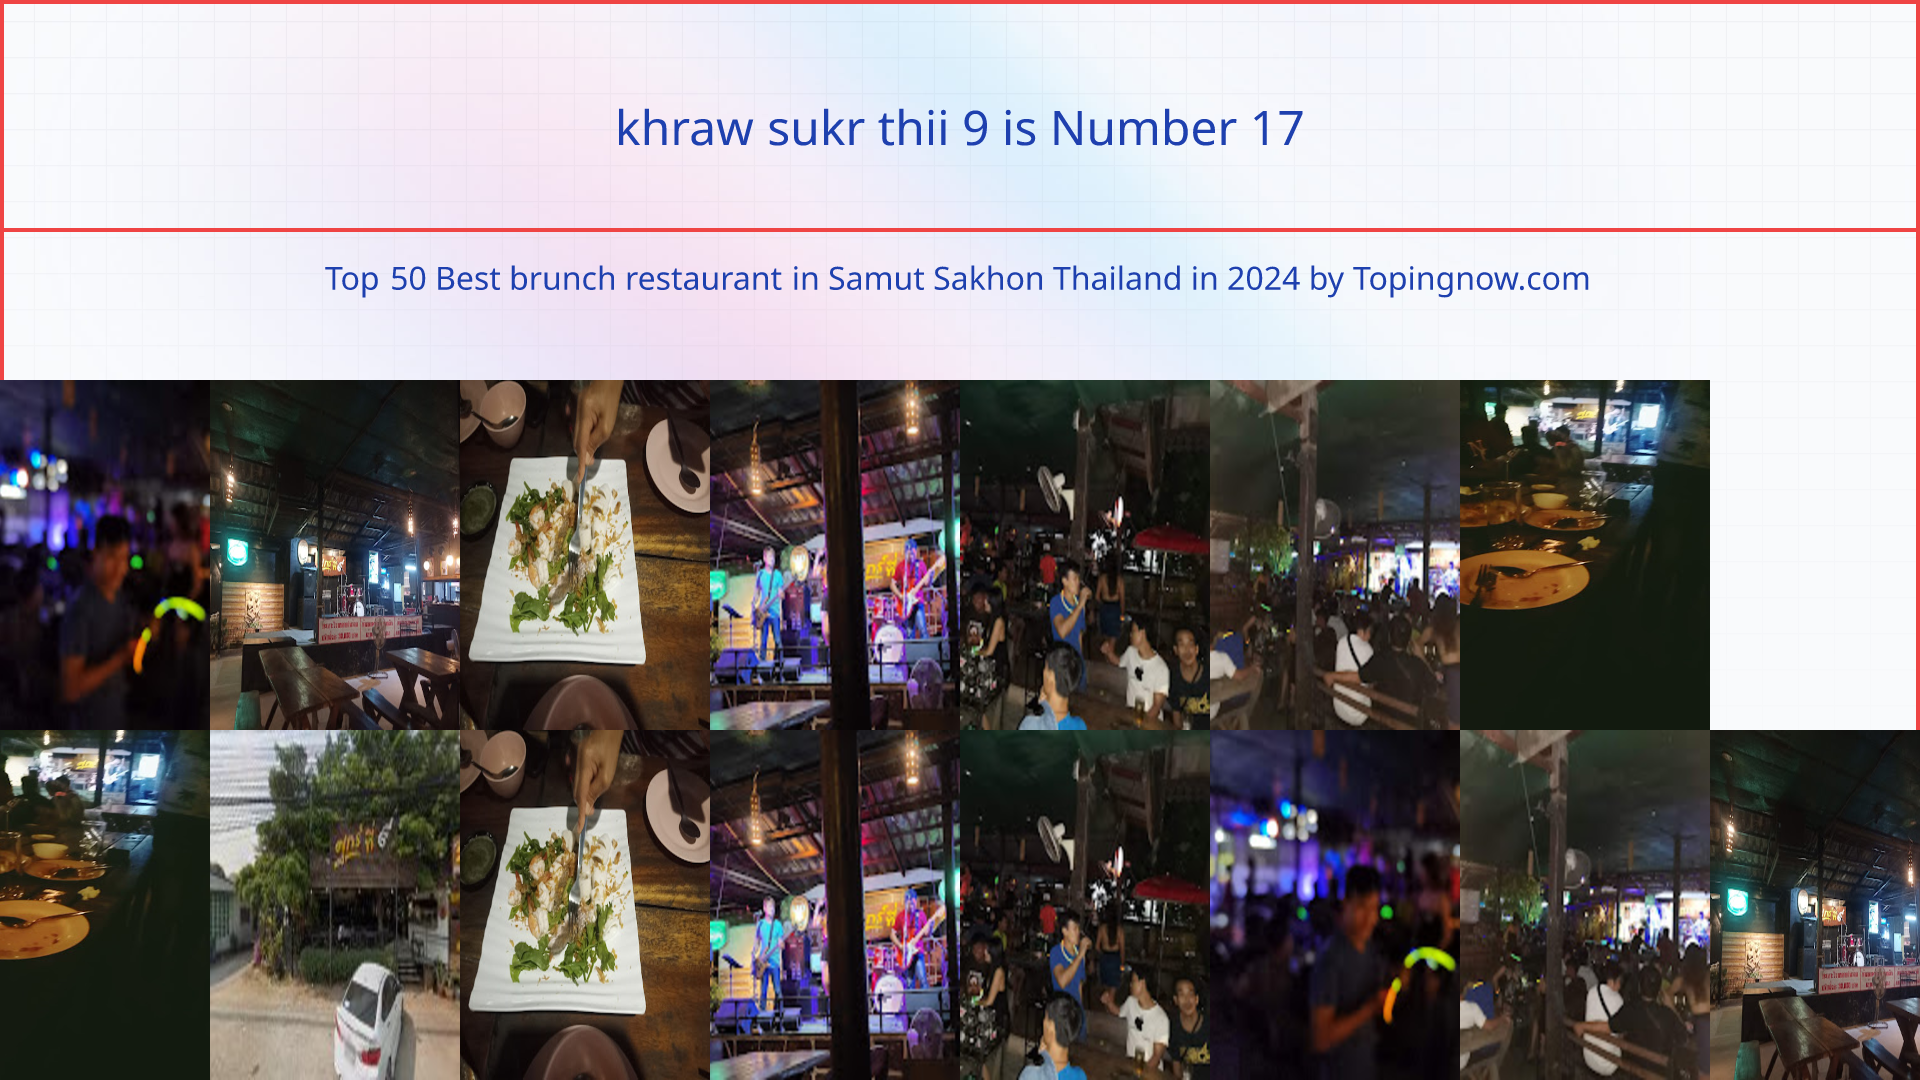 khraw sukr thii 9: Top 50 Best brunch restaurant in Samut Sakhon Thailand in 2024